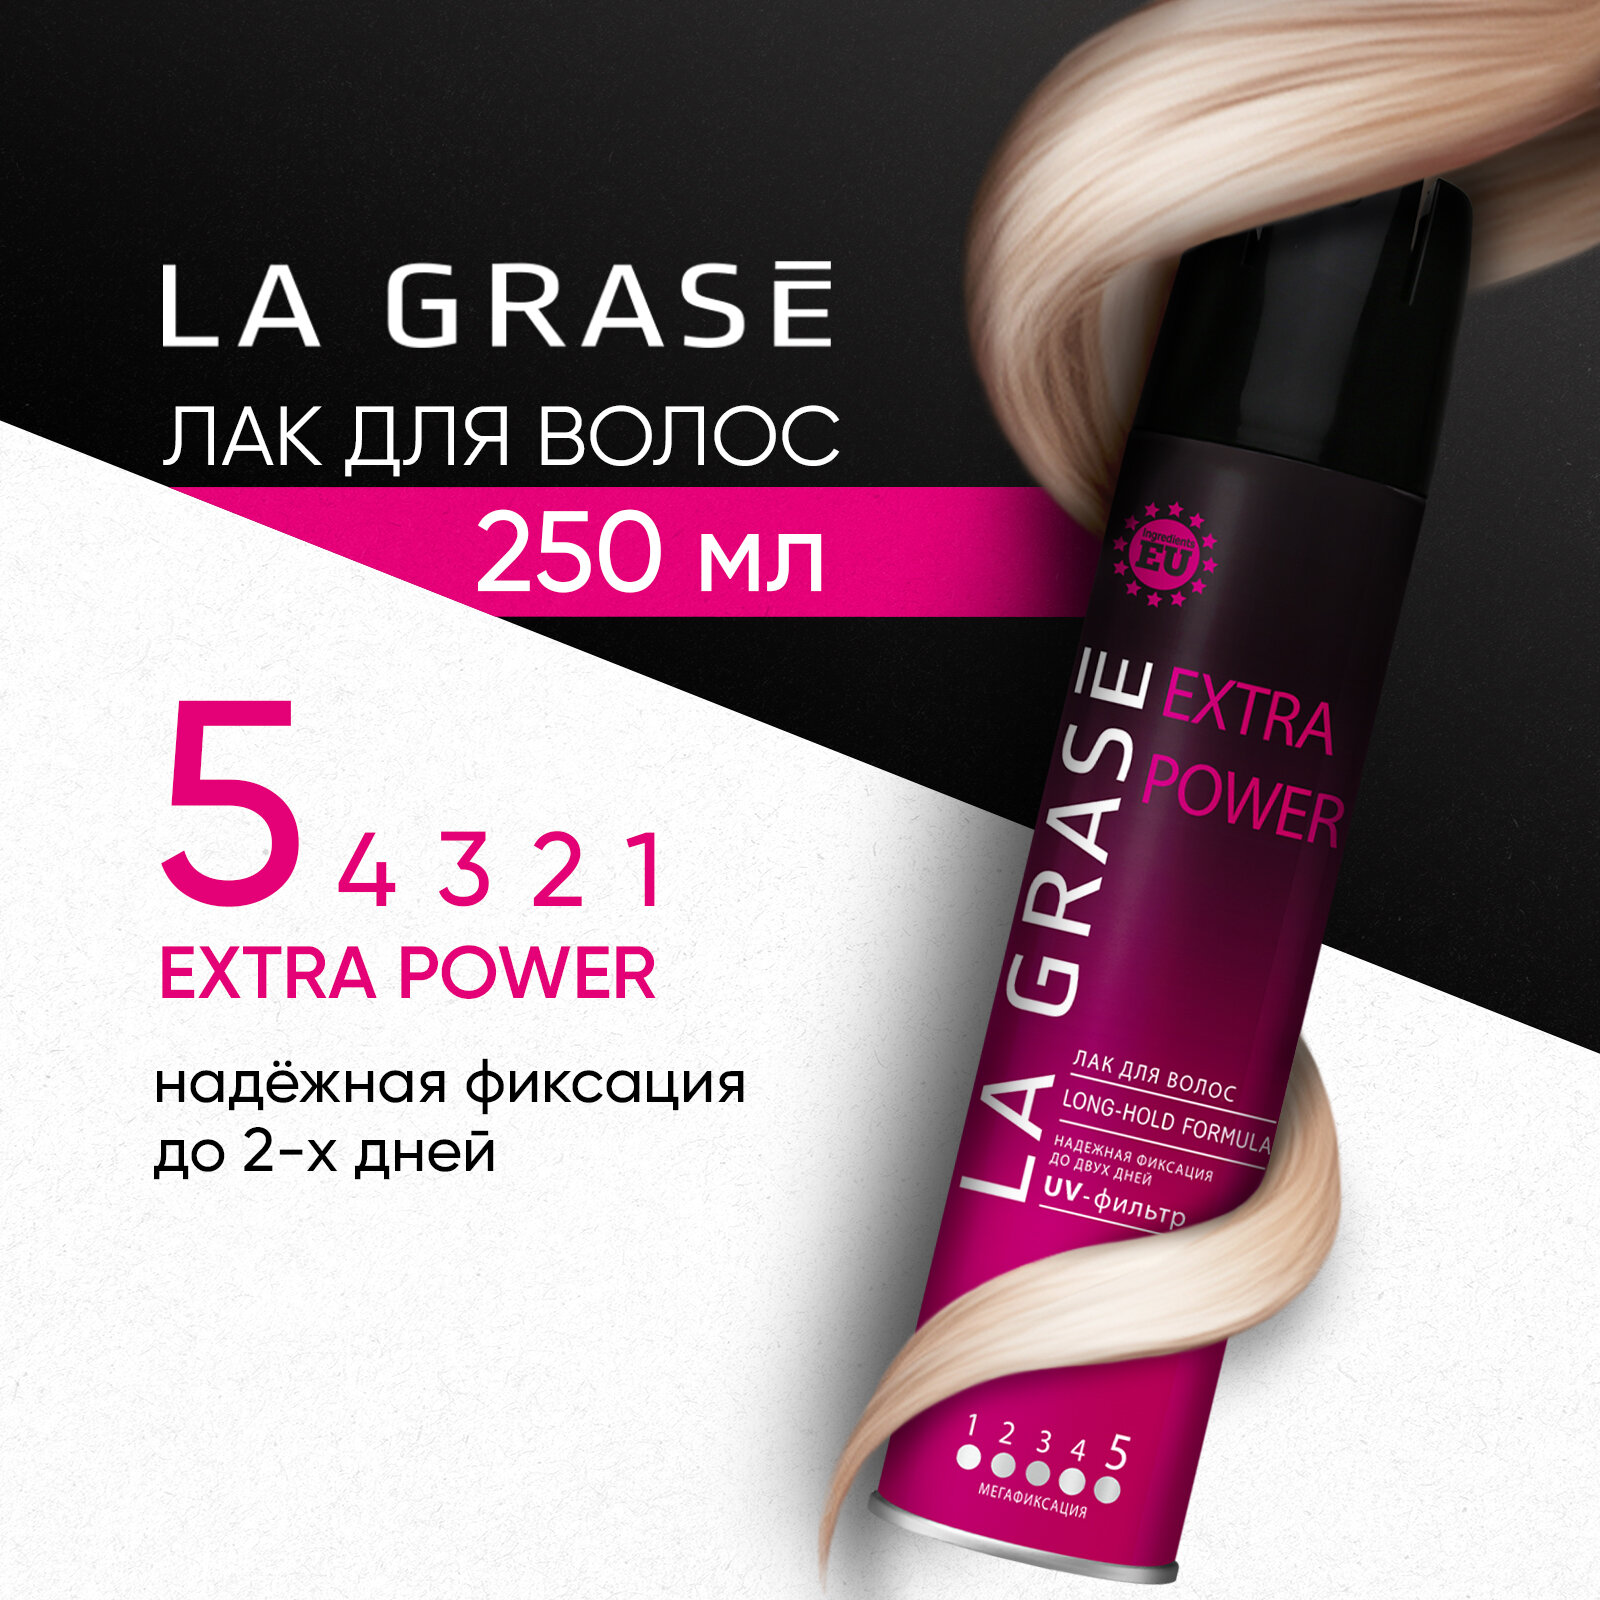 Лак для волос La Grase Extra Power экстрасильной фиксации для укладки и объема локонов, 250 мл